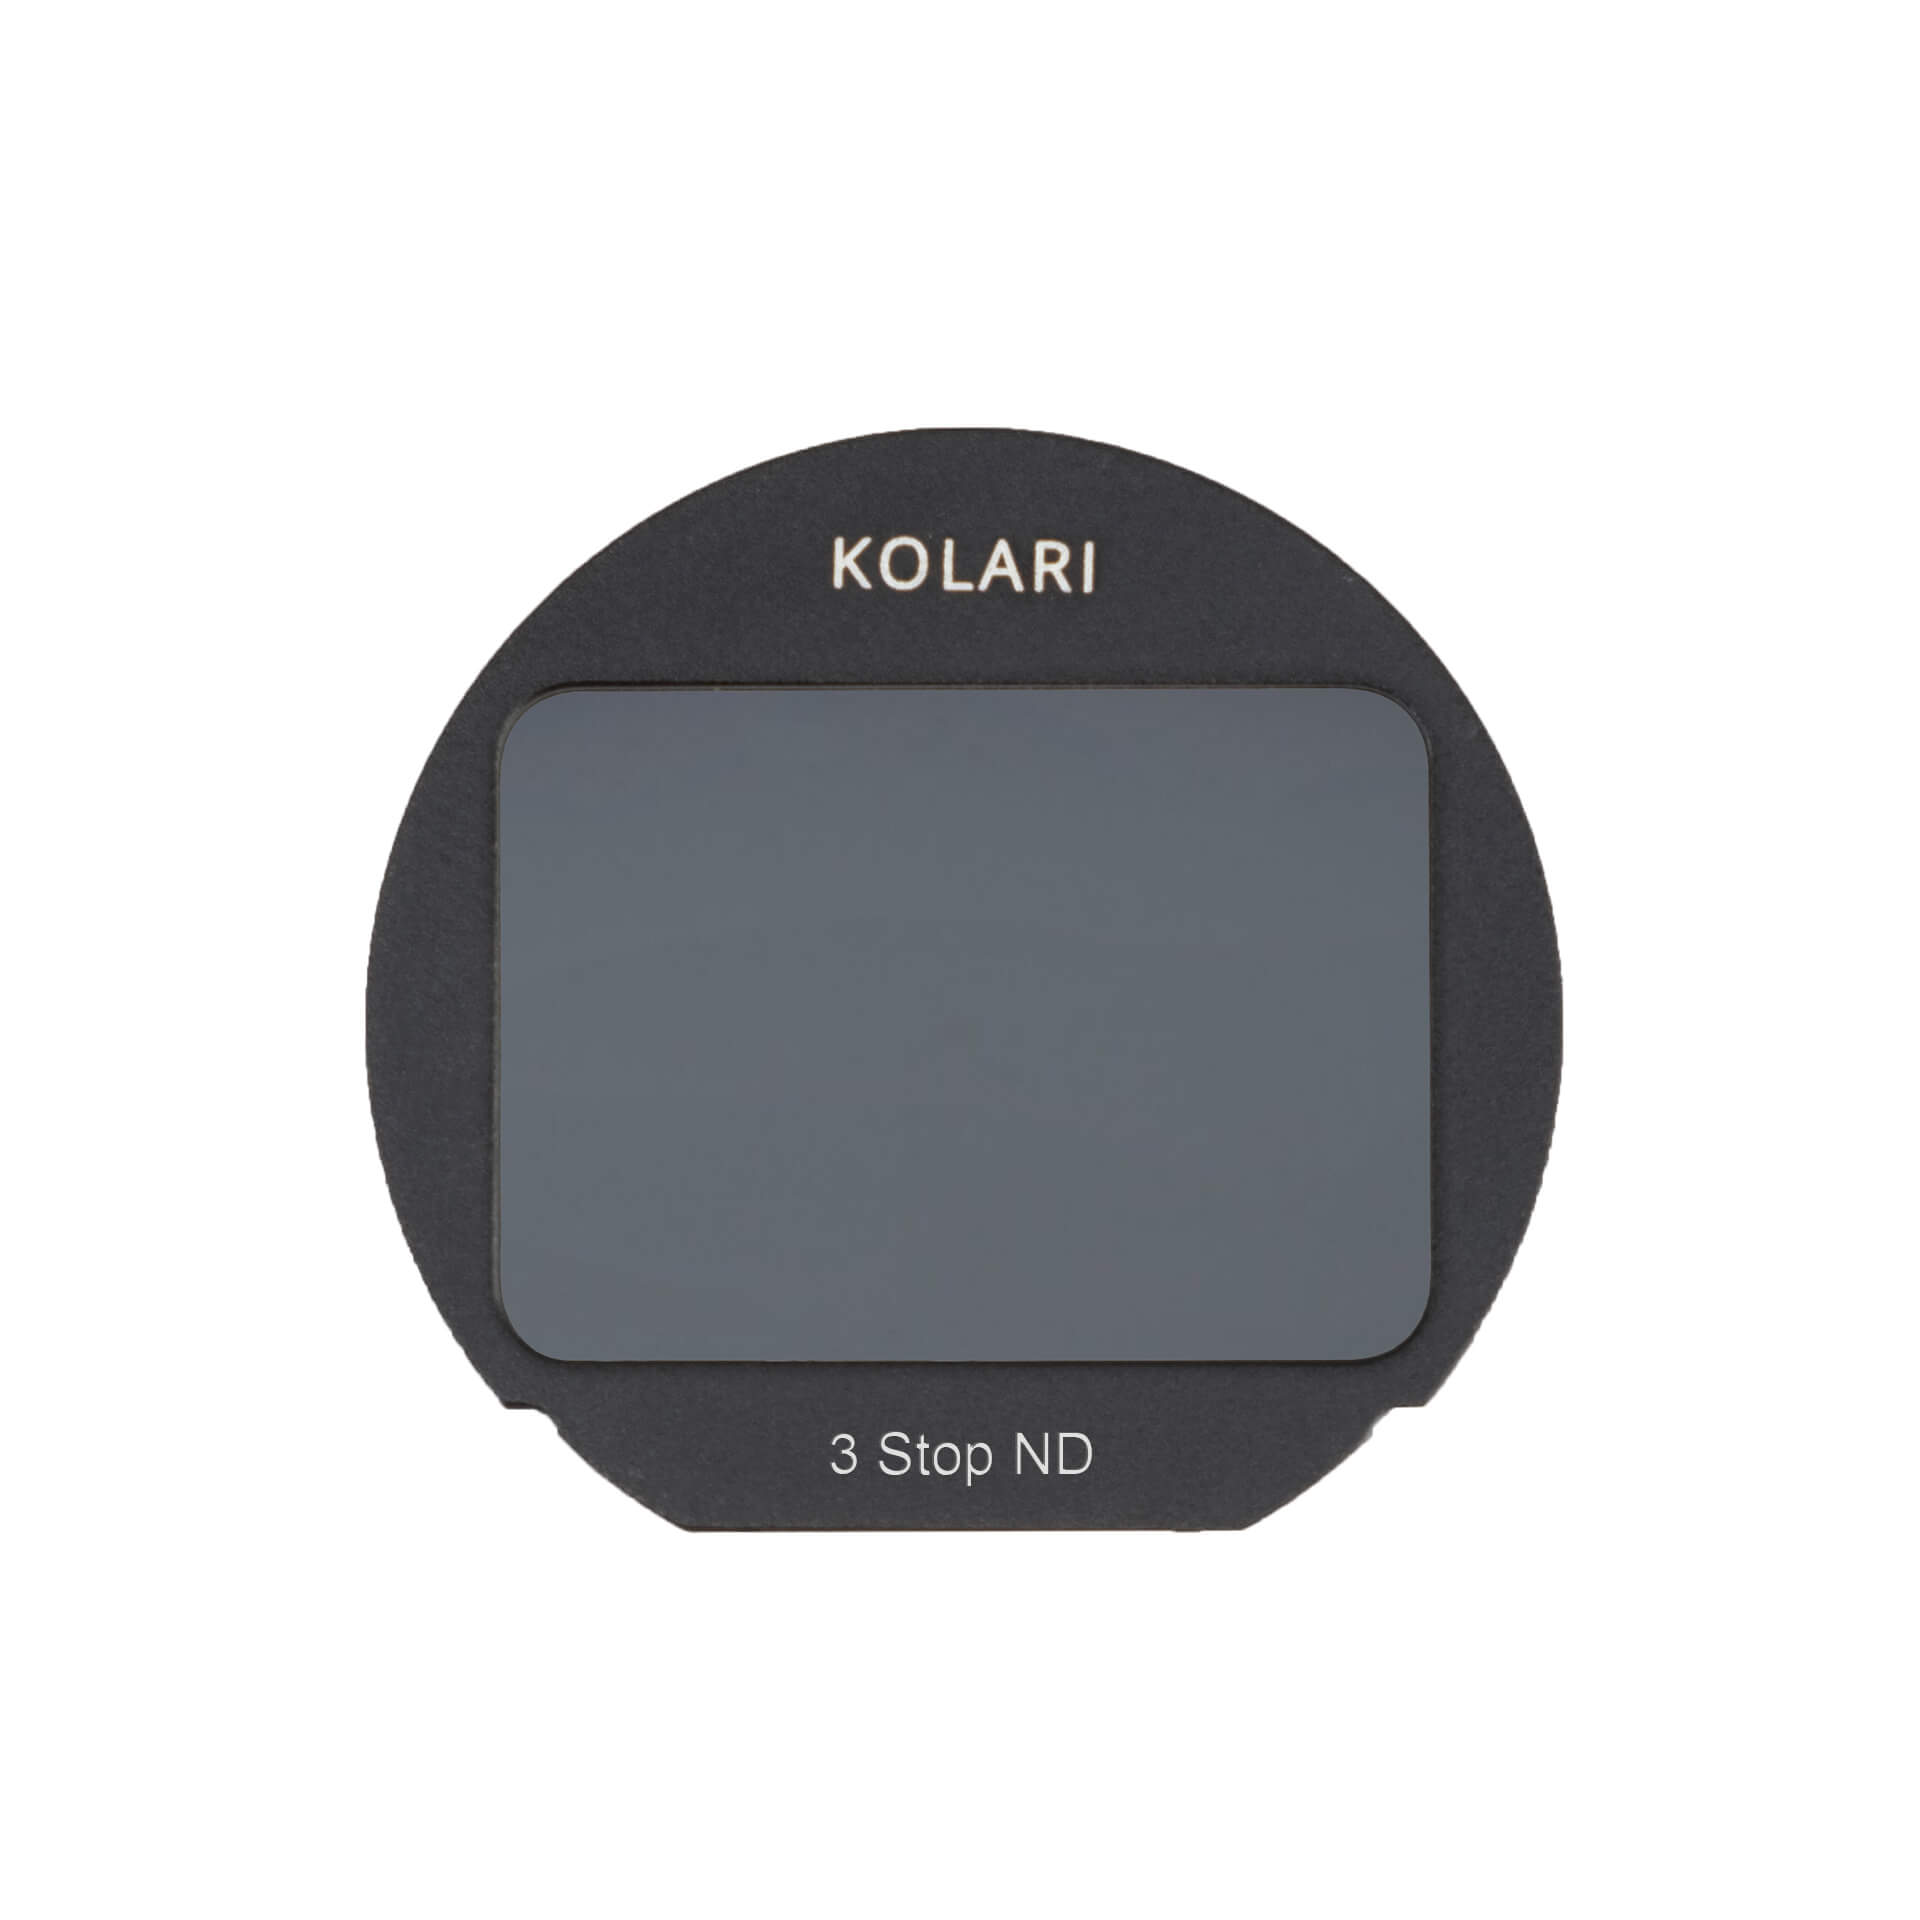 Kolari Clip in Filter Fuji 1 white background 1 1